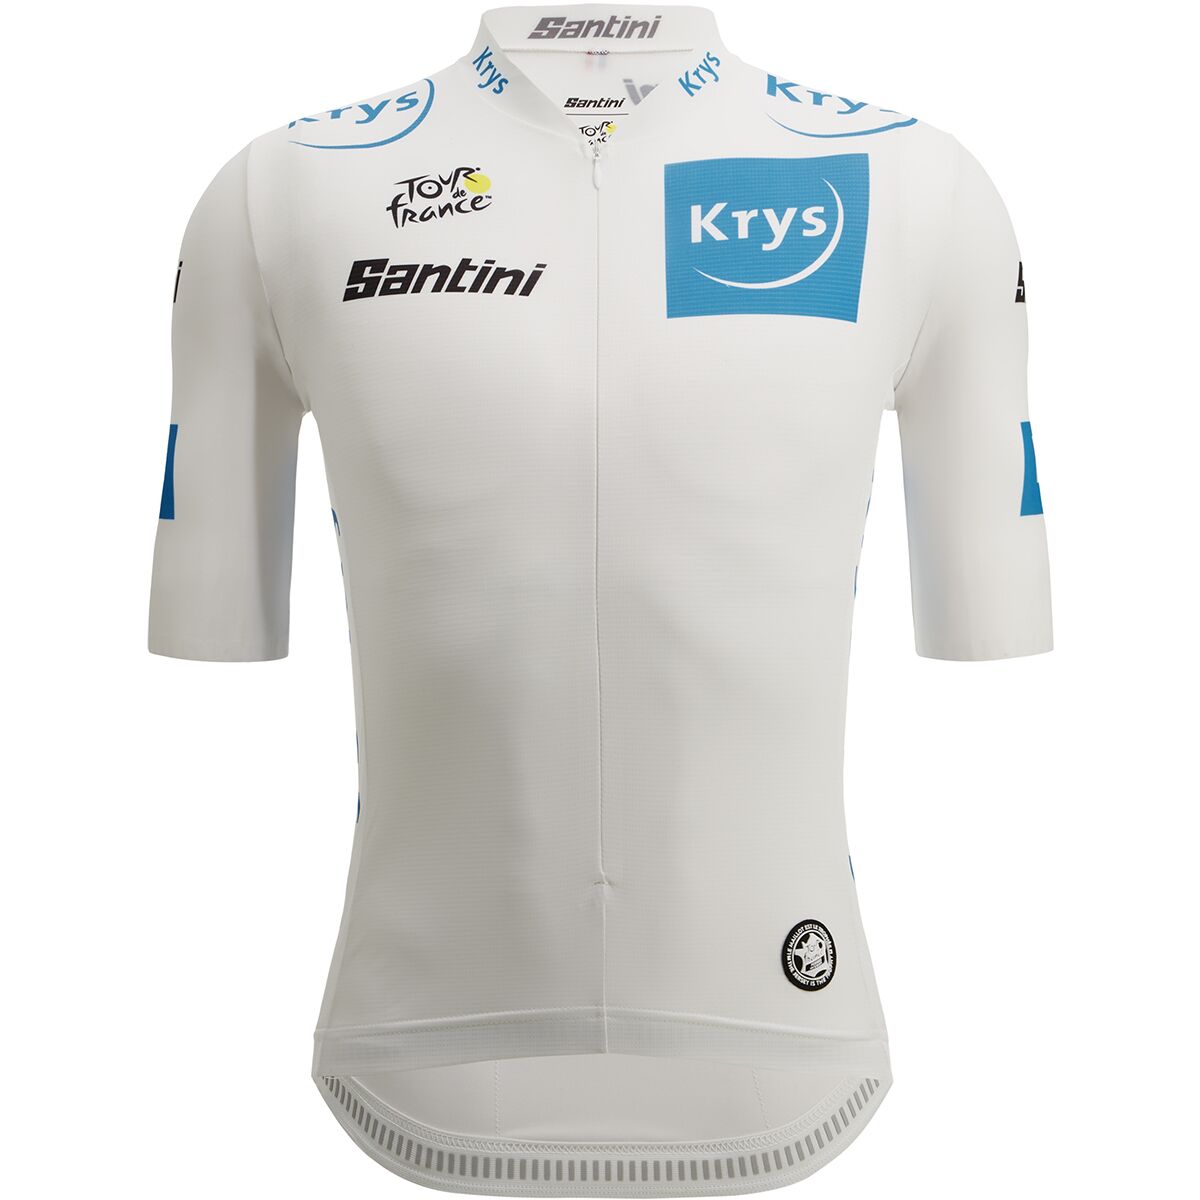 Santini Tour de France Official Team Best Young Rider Jersey - Men's